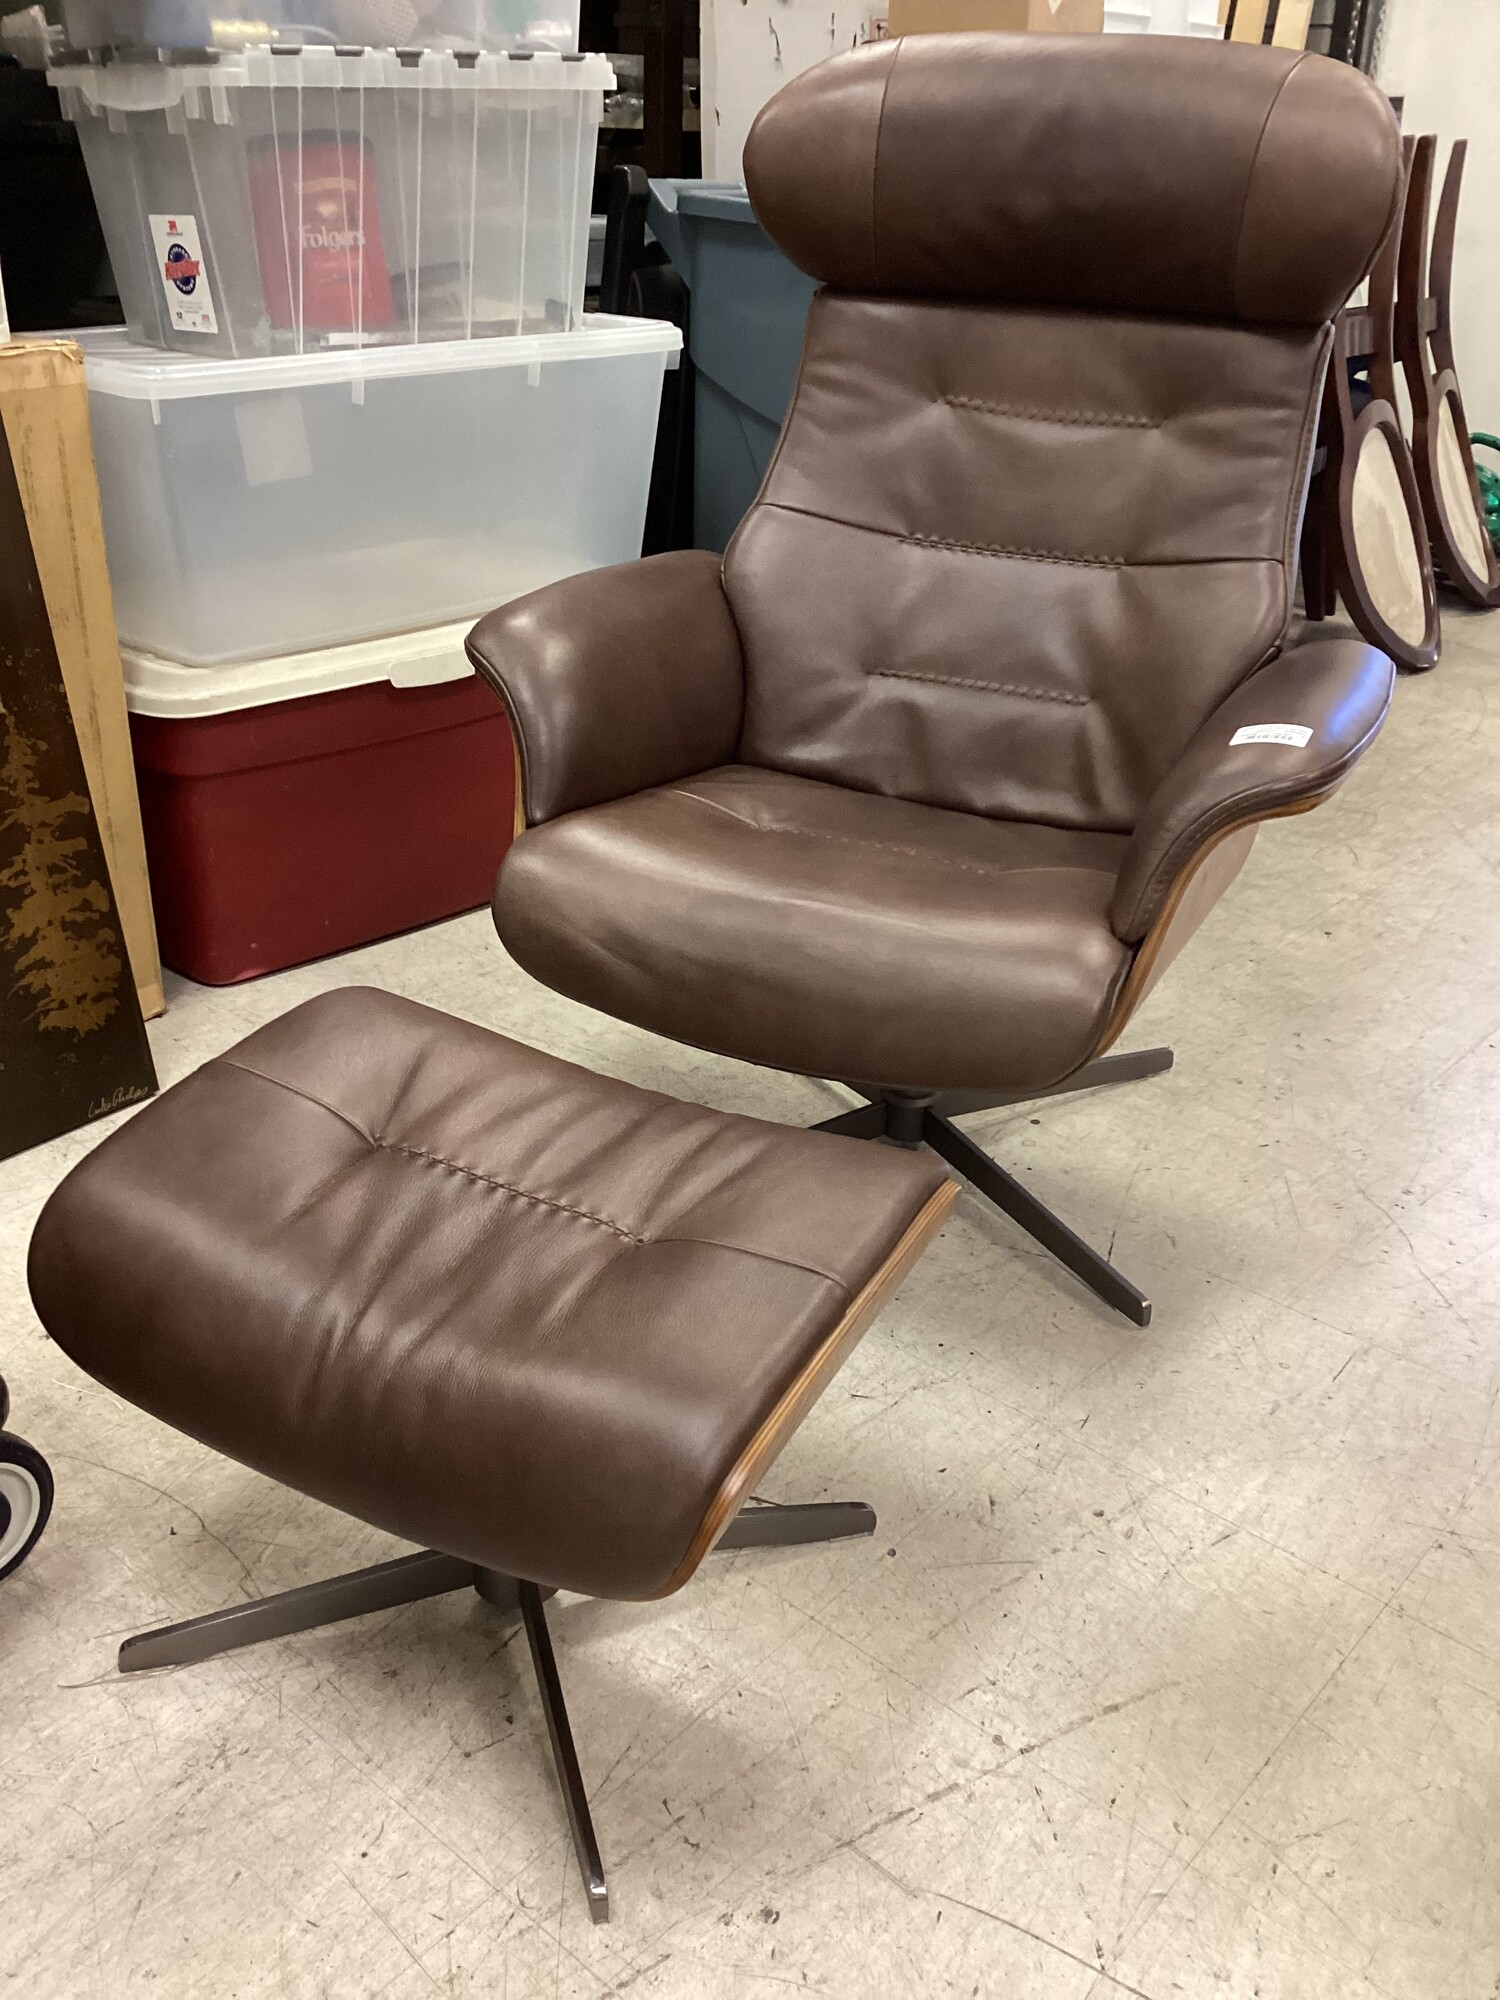 Leather  Chair W/ Ottoman, Espresso, Living Spa
31 In W
Otto= 20 In x 14 In x 15 In T